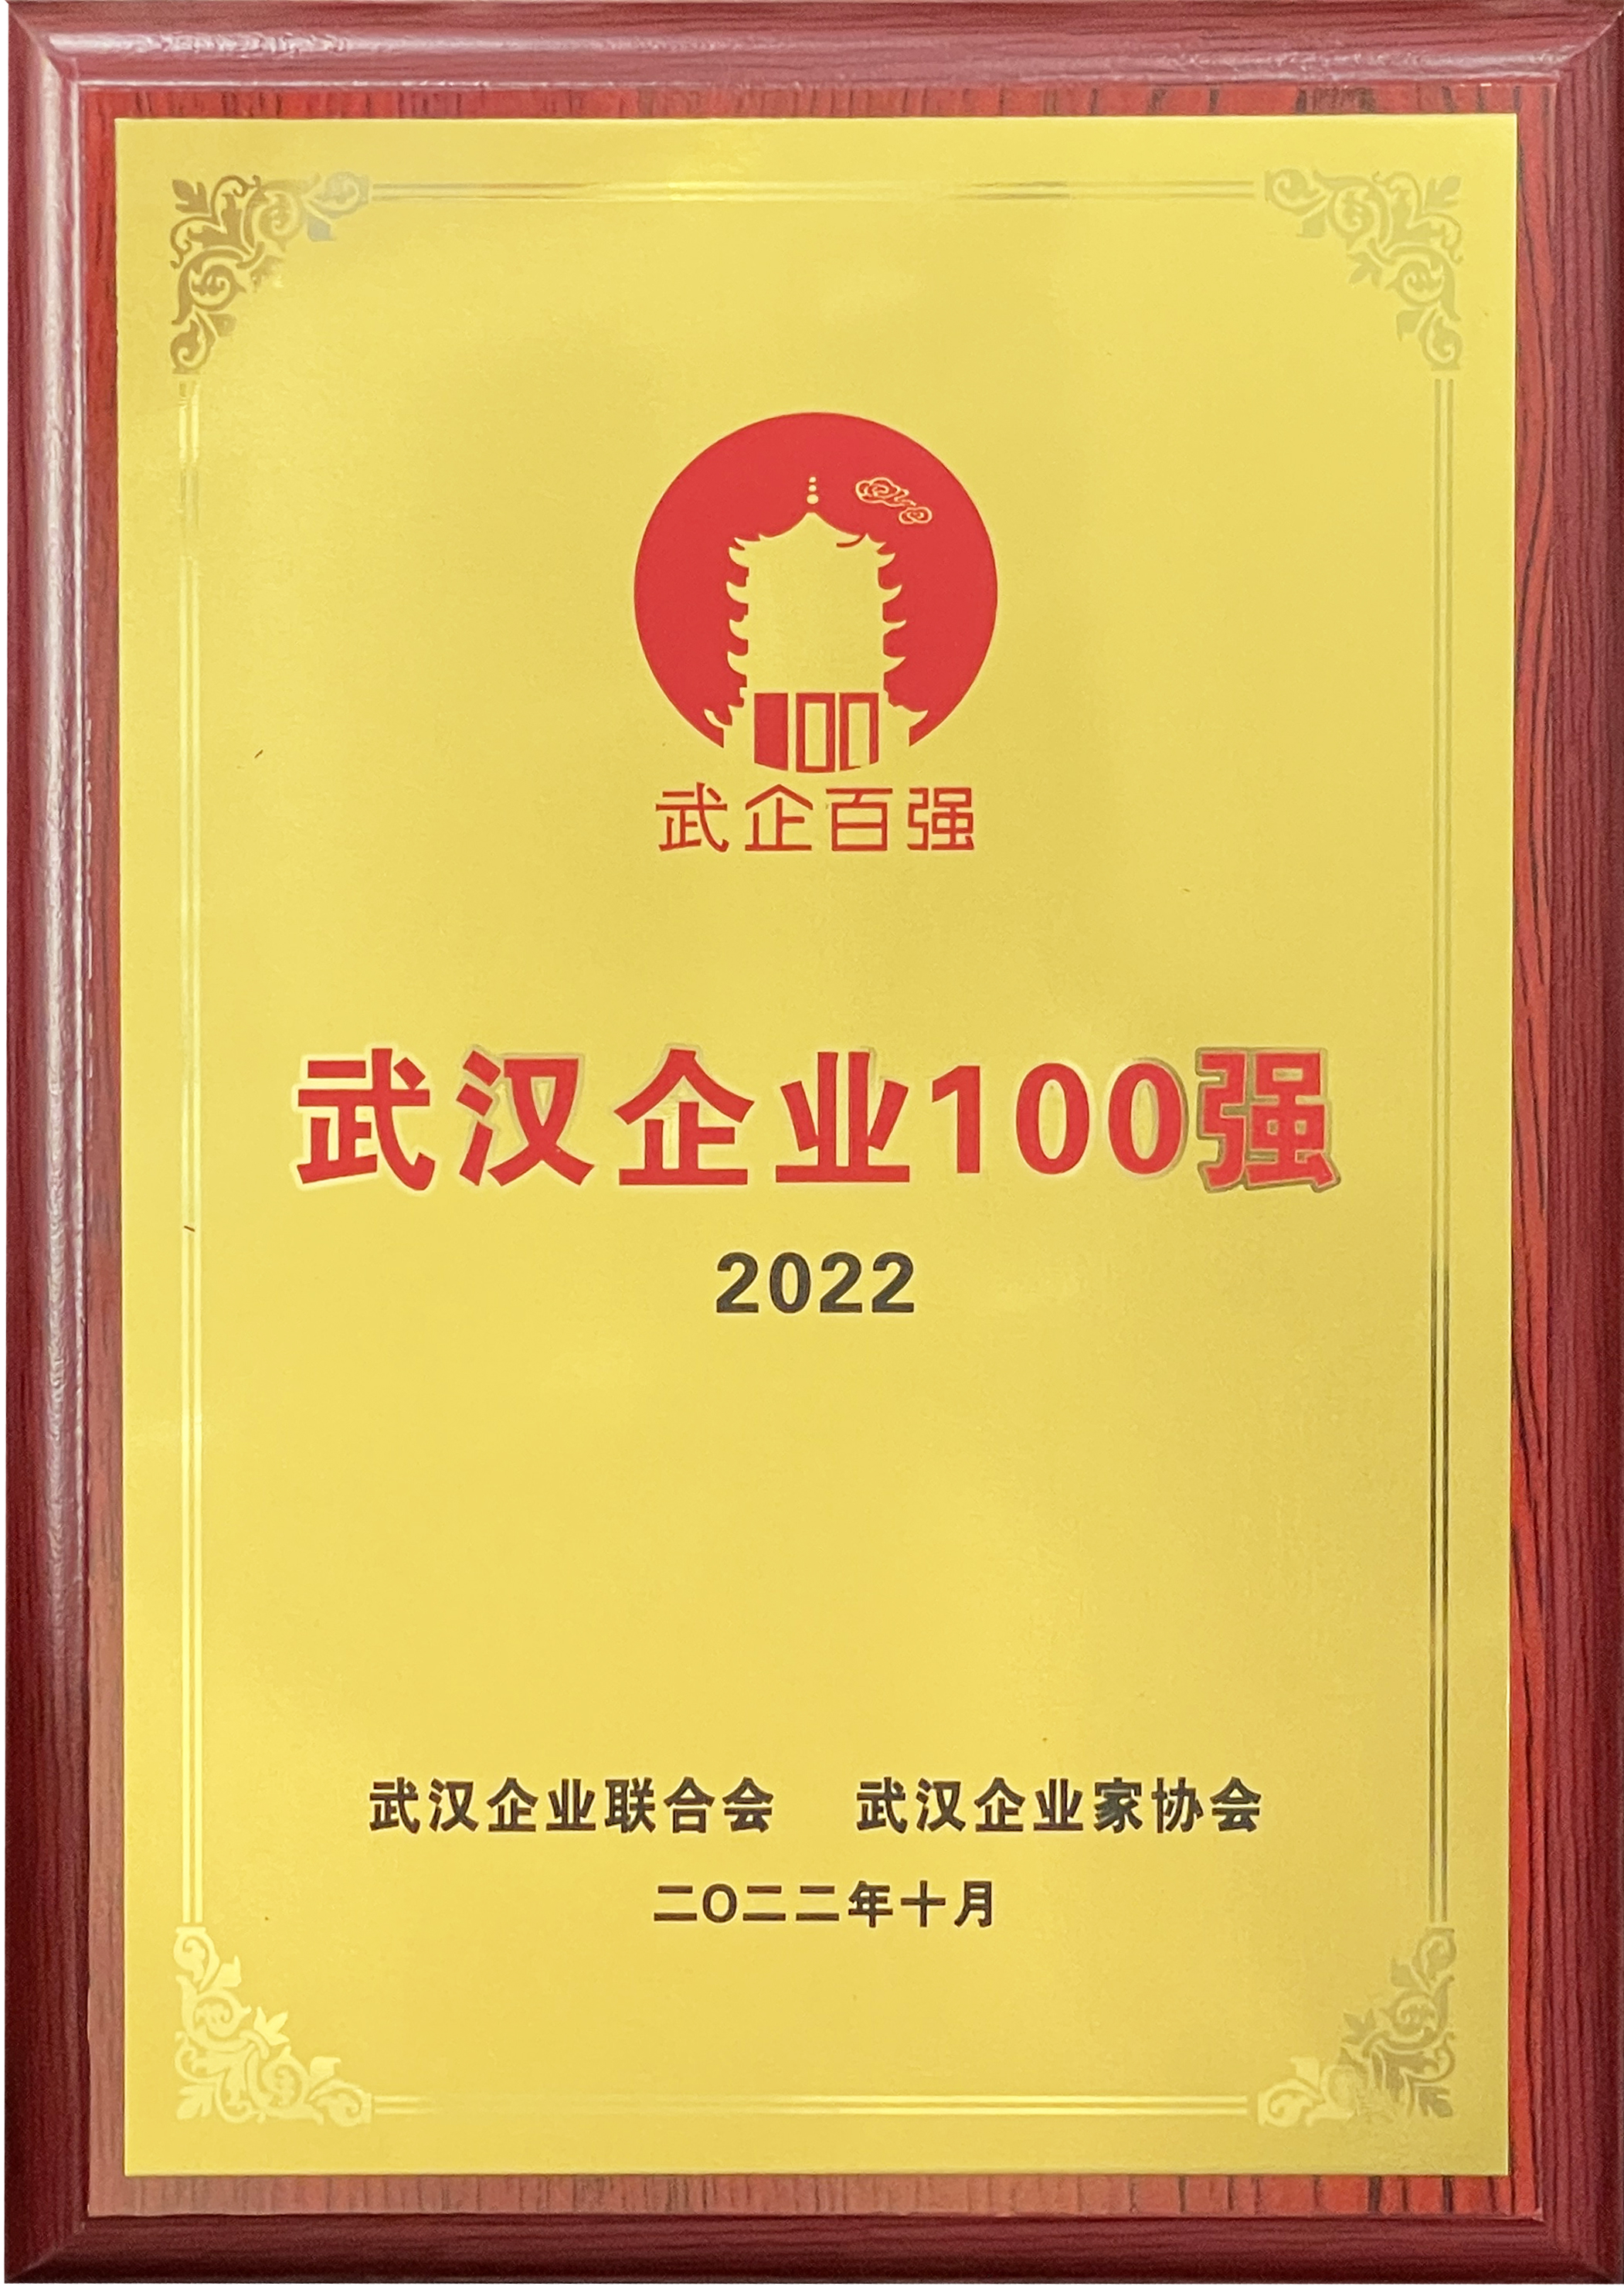  2022武汉企业100强